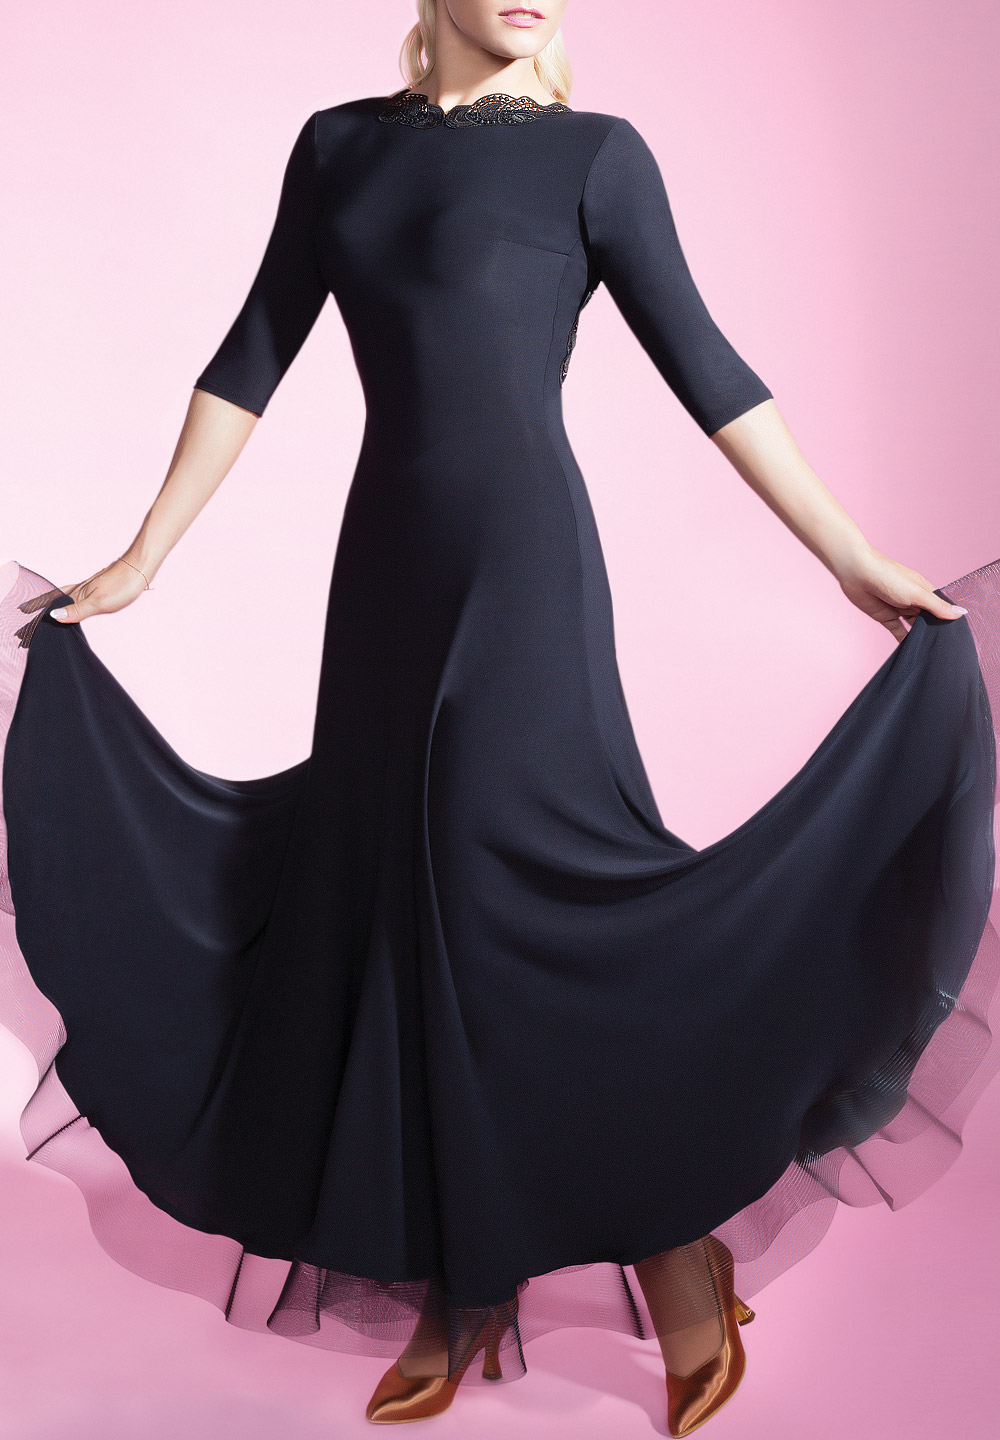 Chrisanne Clover Tania Athena Ballroom Dress | Dresses